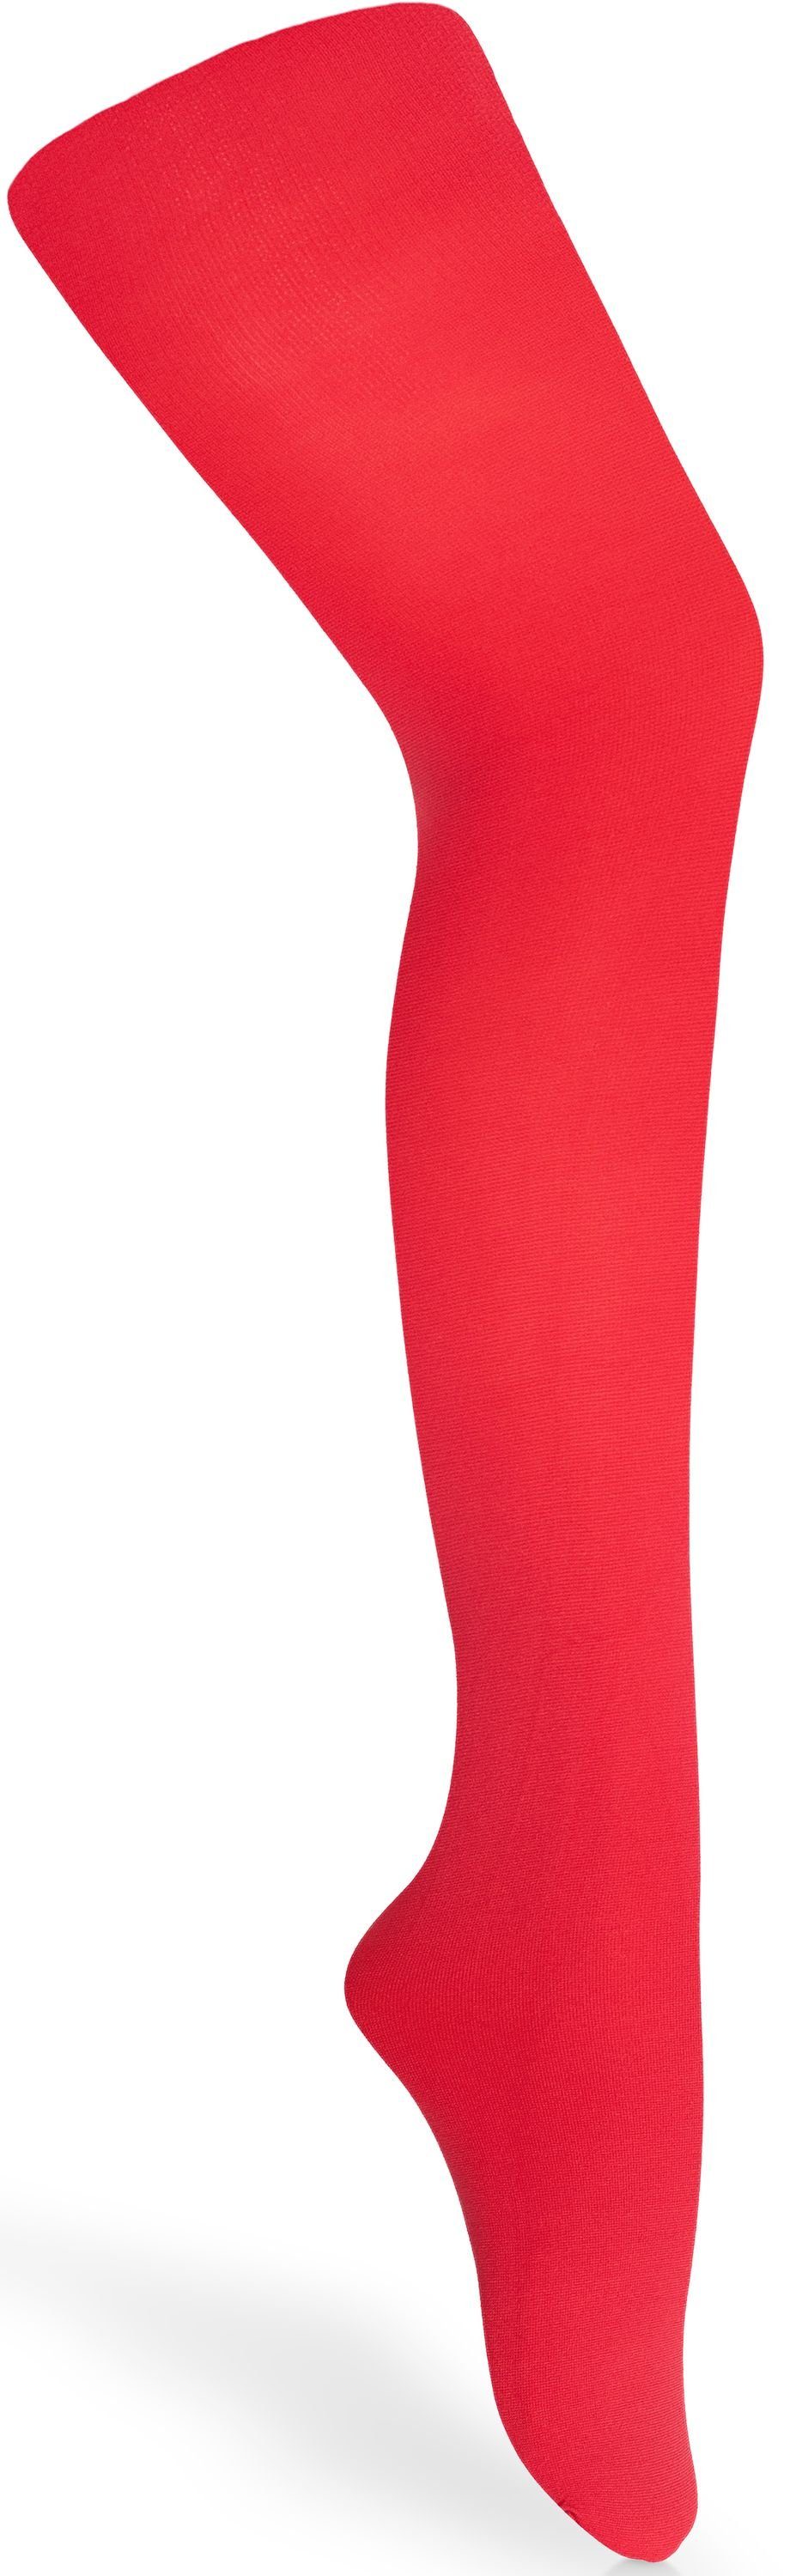 Merry Style Strumpfhose Kinder Strumpfhose für Mädchen Microfaser 60 DEN 60 DEN (1 St) Rot